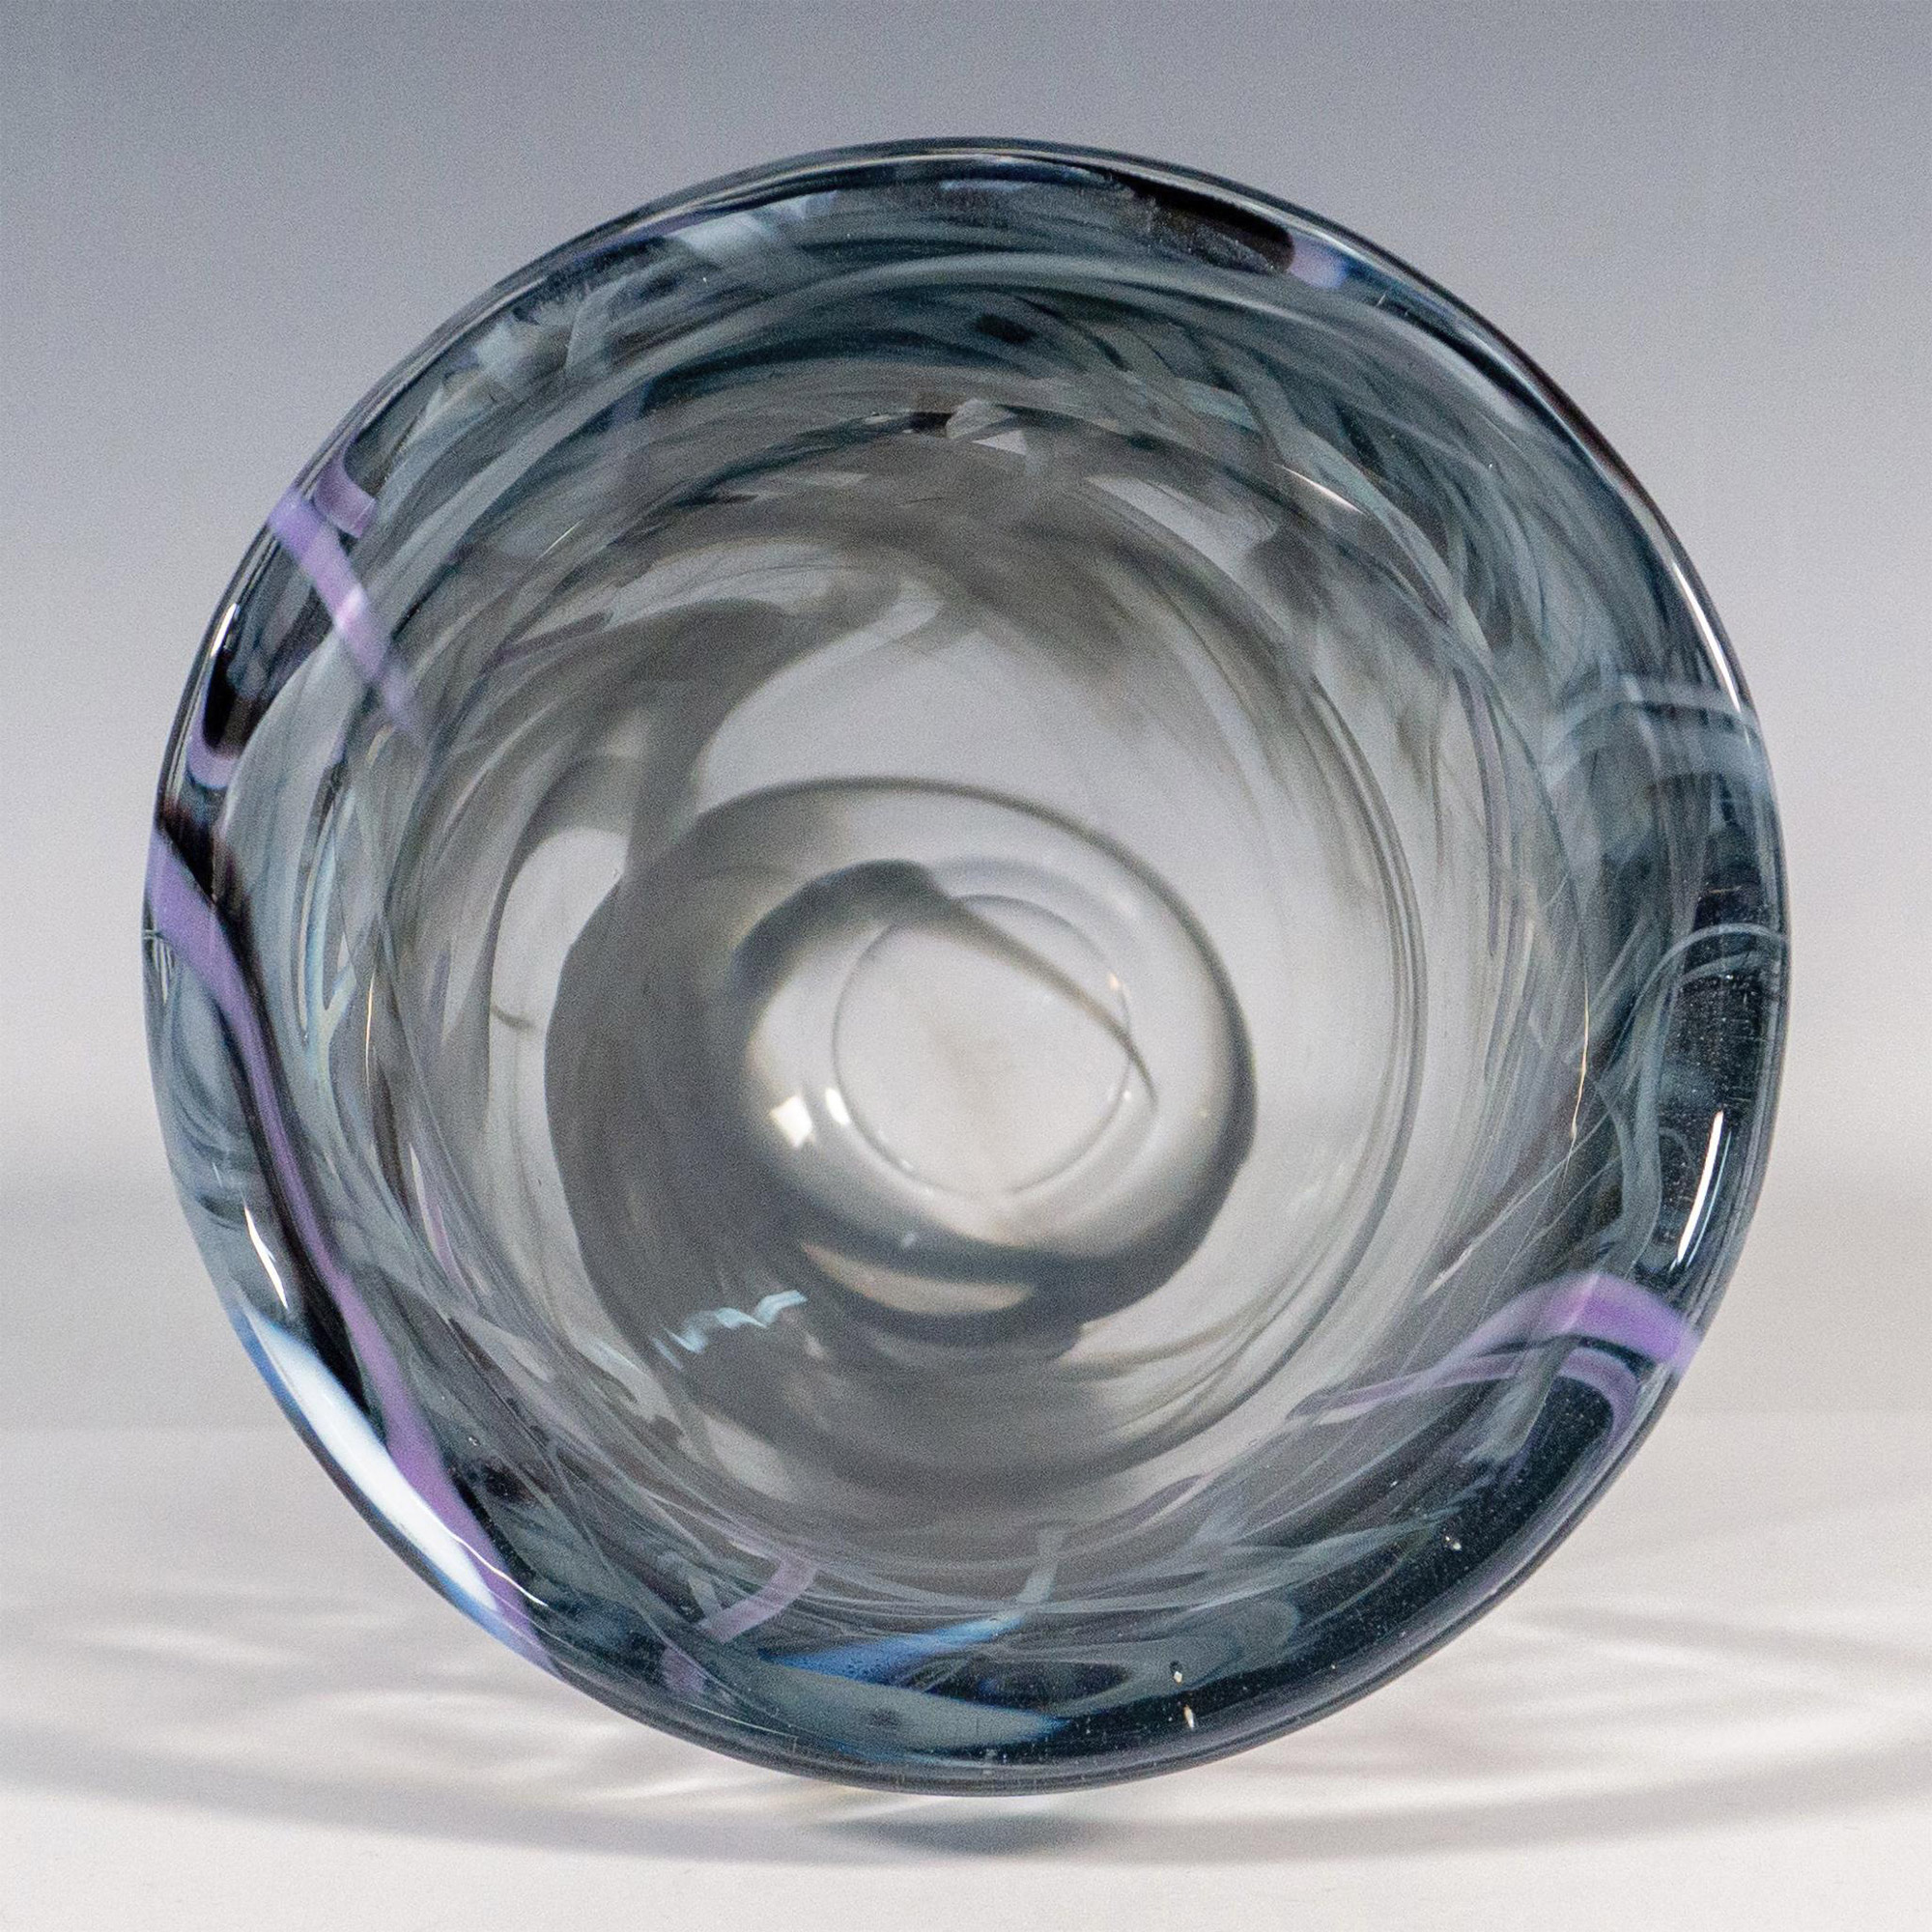 Kosta Boda by Anna Ehrner Glass Vase, Contrast - Image 5 of 5